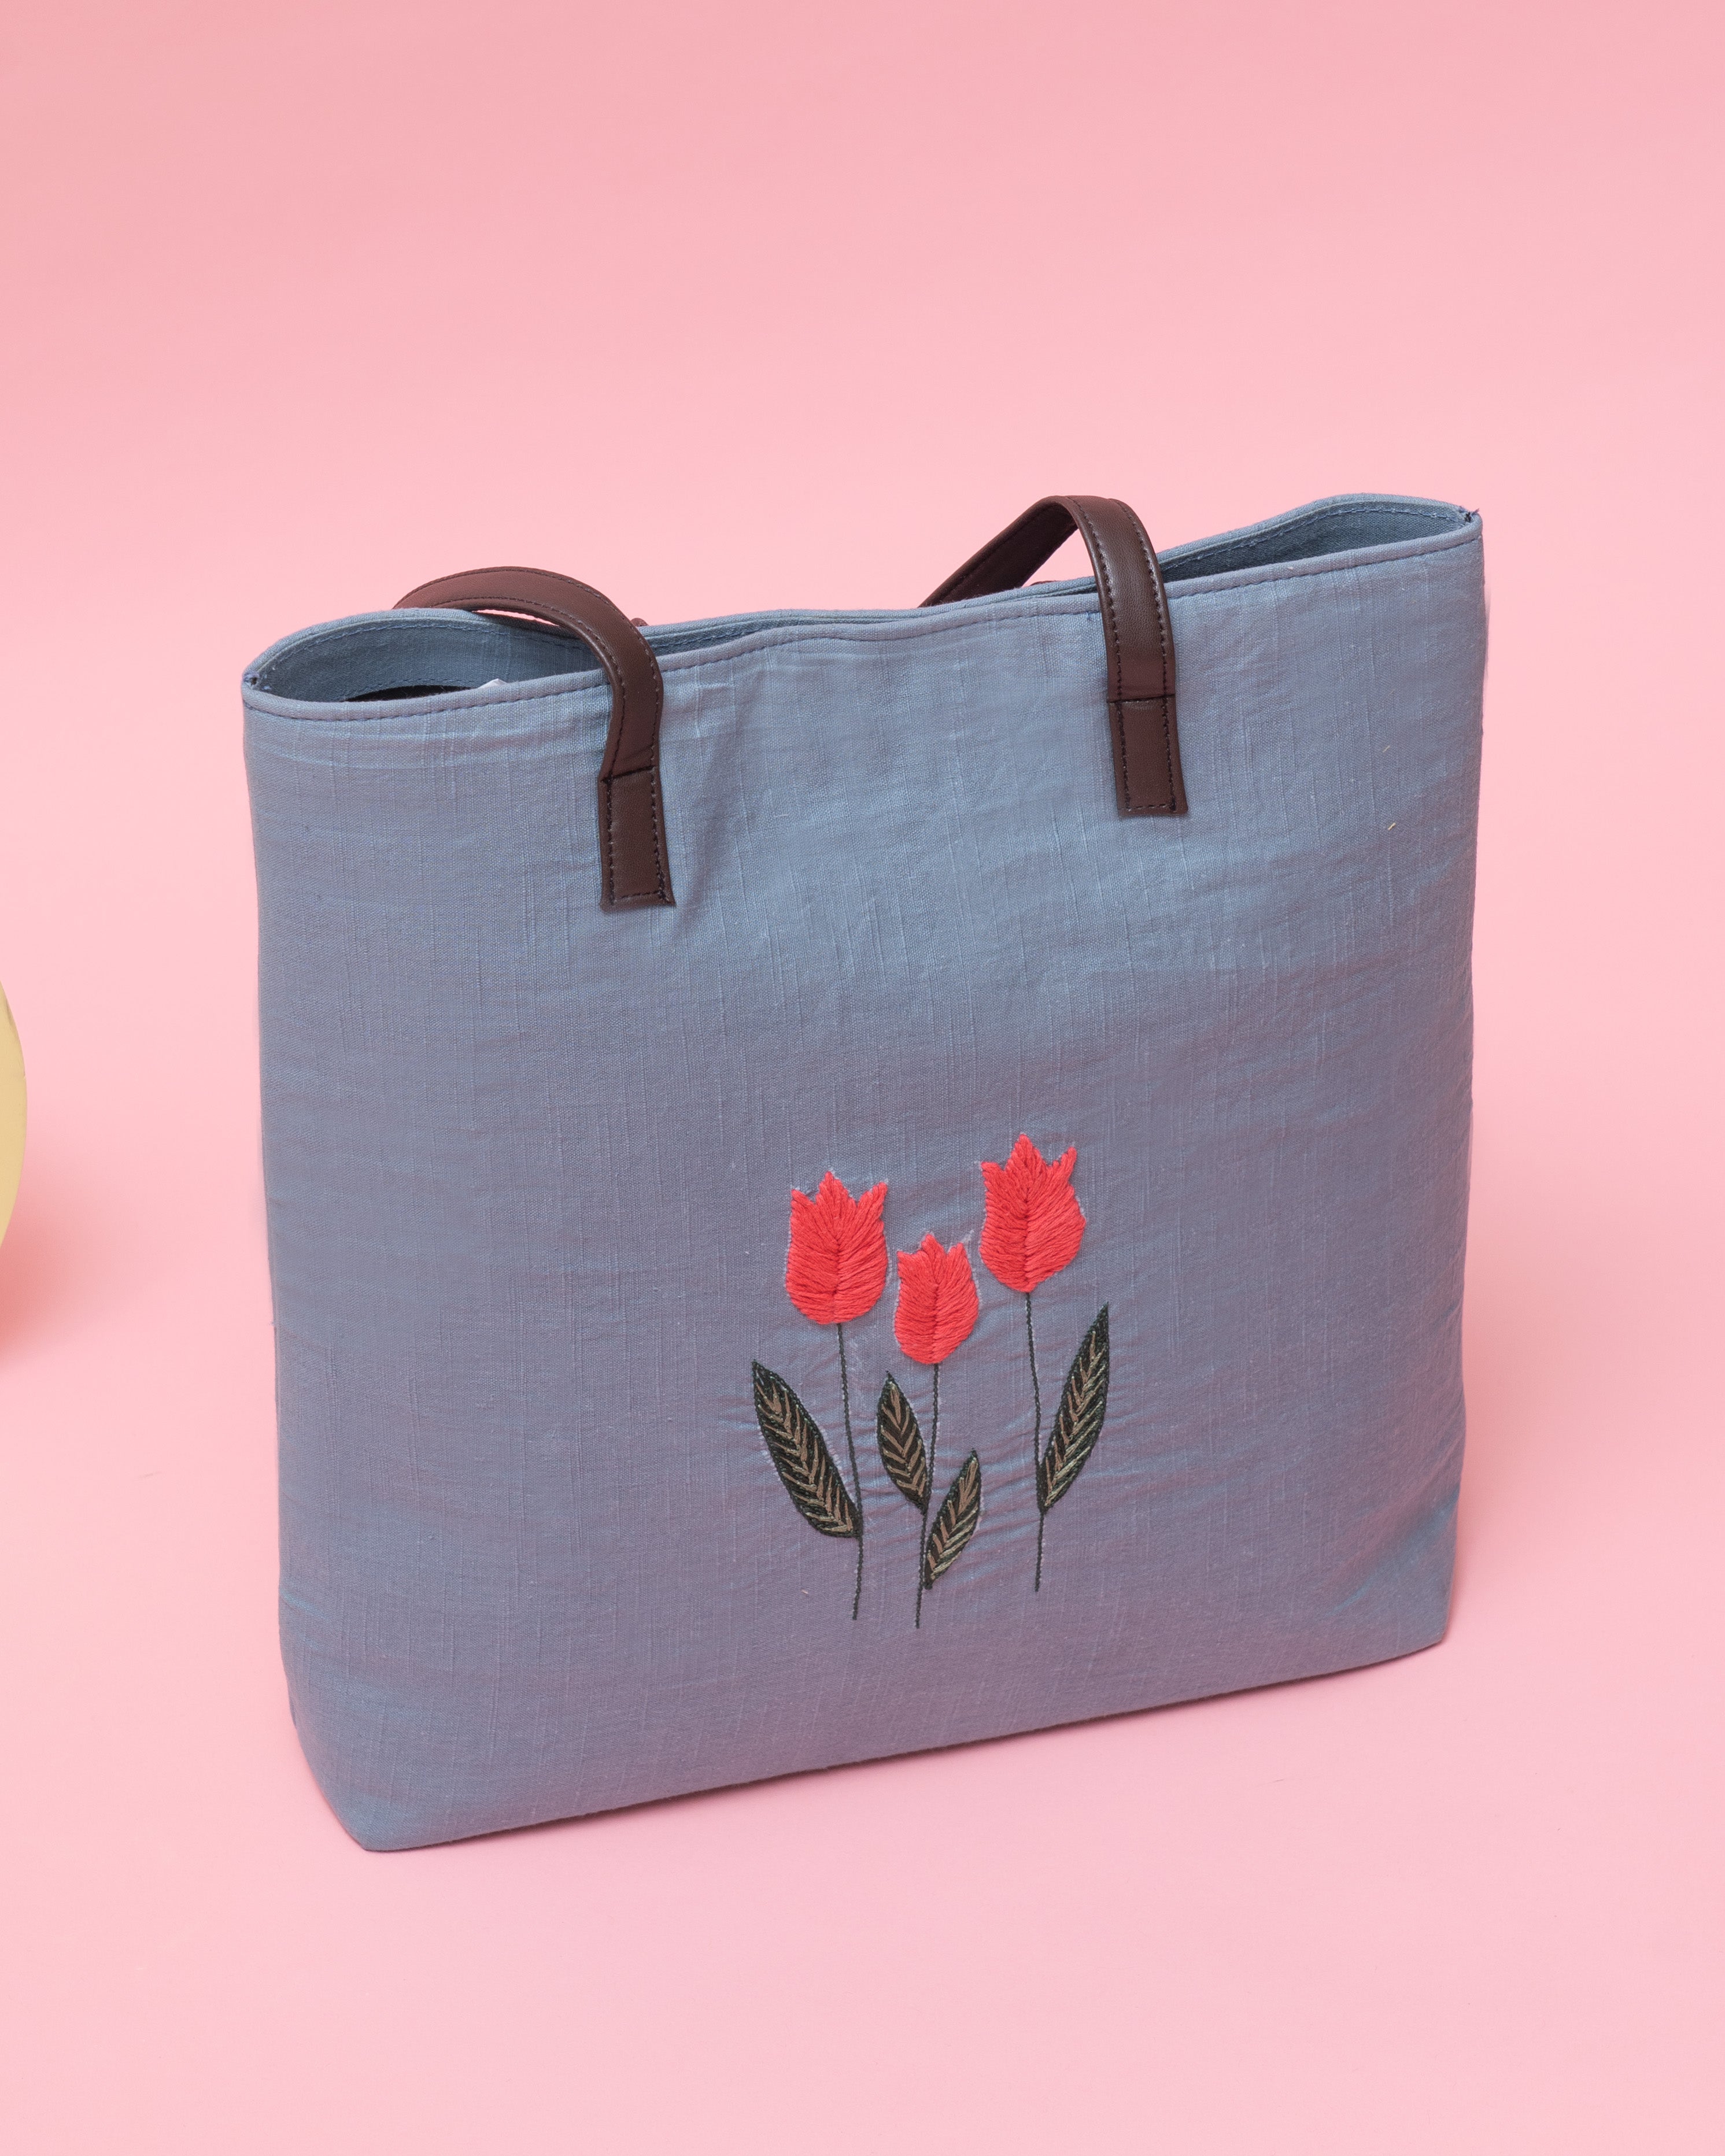 Pink Tulip Tote Bag